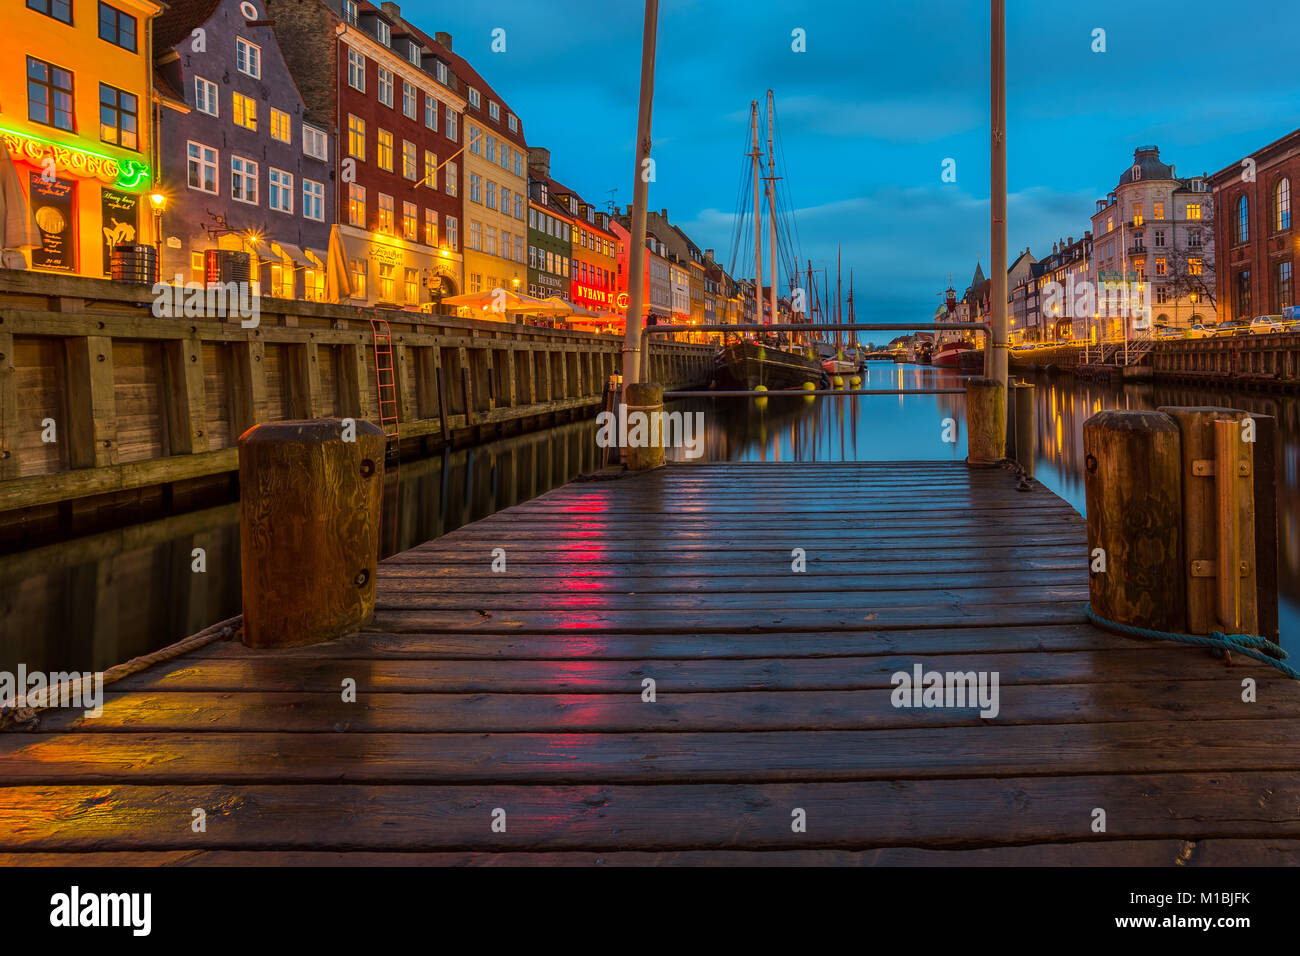 Kopenhagen, Dänemark - 28. FEBRUAR 2017: Nyhavn in der Nacht. Eine aus dem 17. Jahrhundert am Wasser-, Kanal- und Vergnügungsviertel mit bunten Stadthäuser Stockfoto